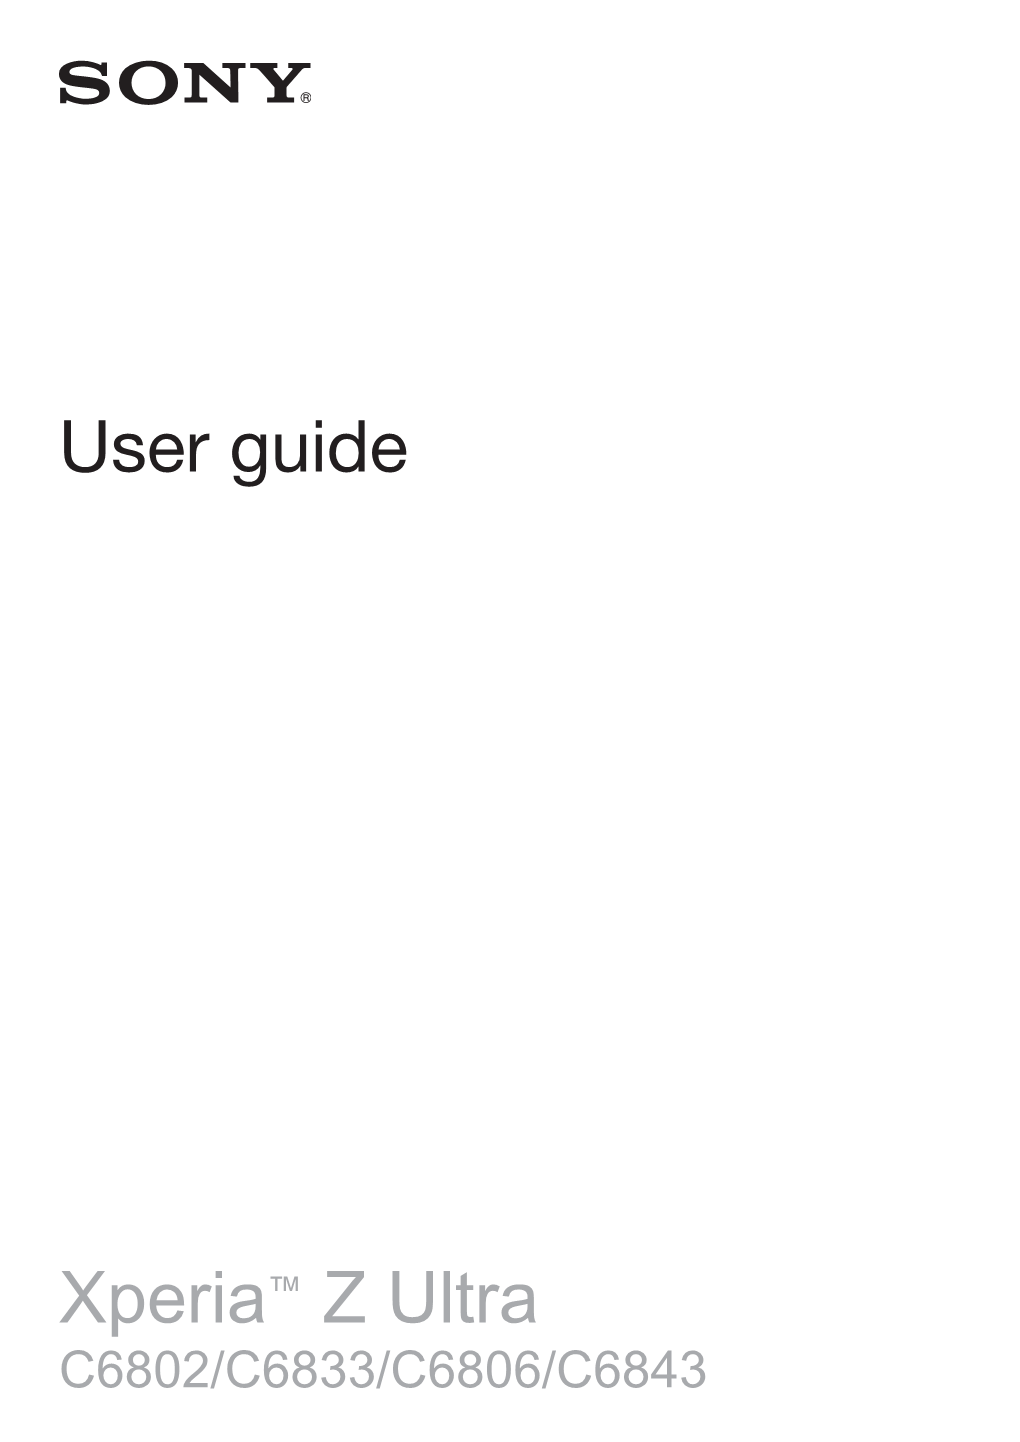 User Manual 2.7 MB